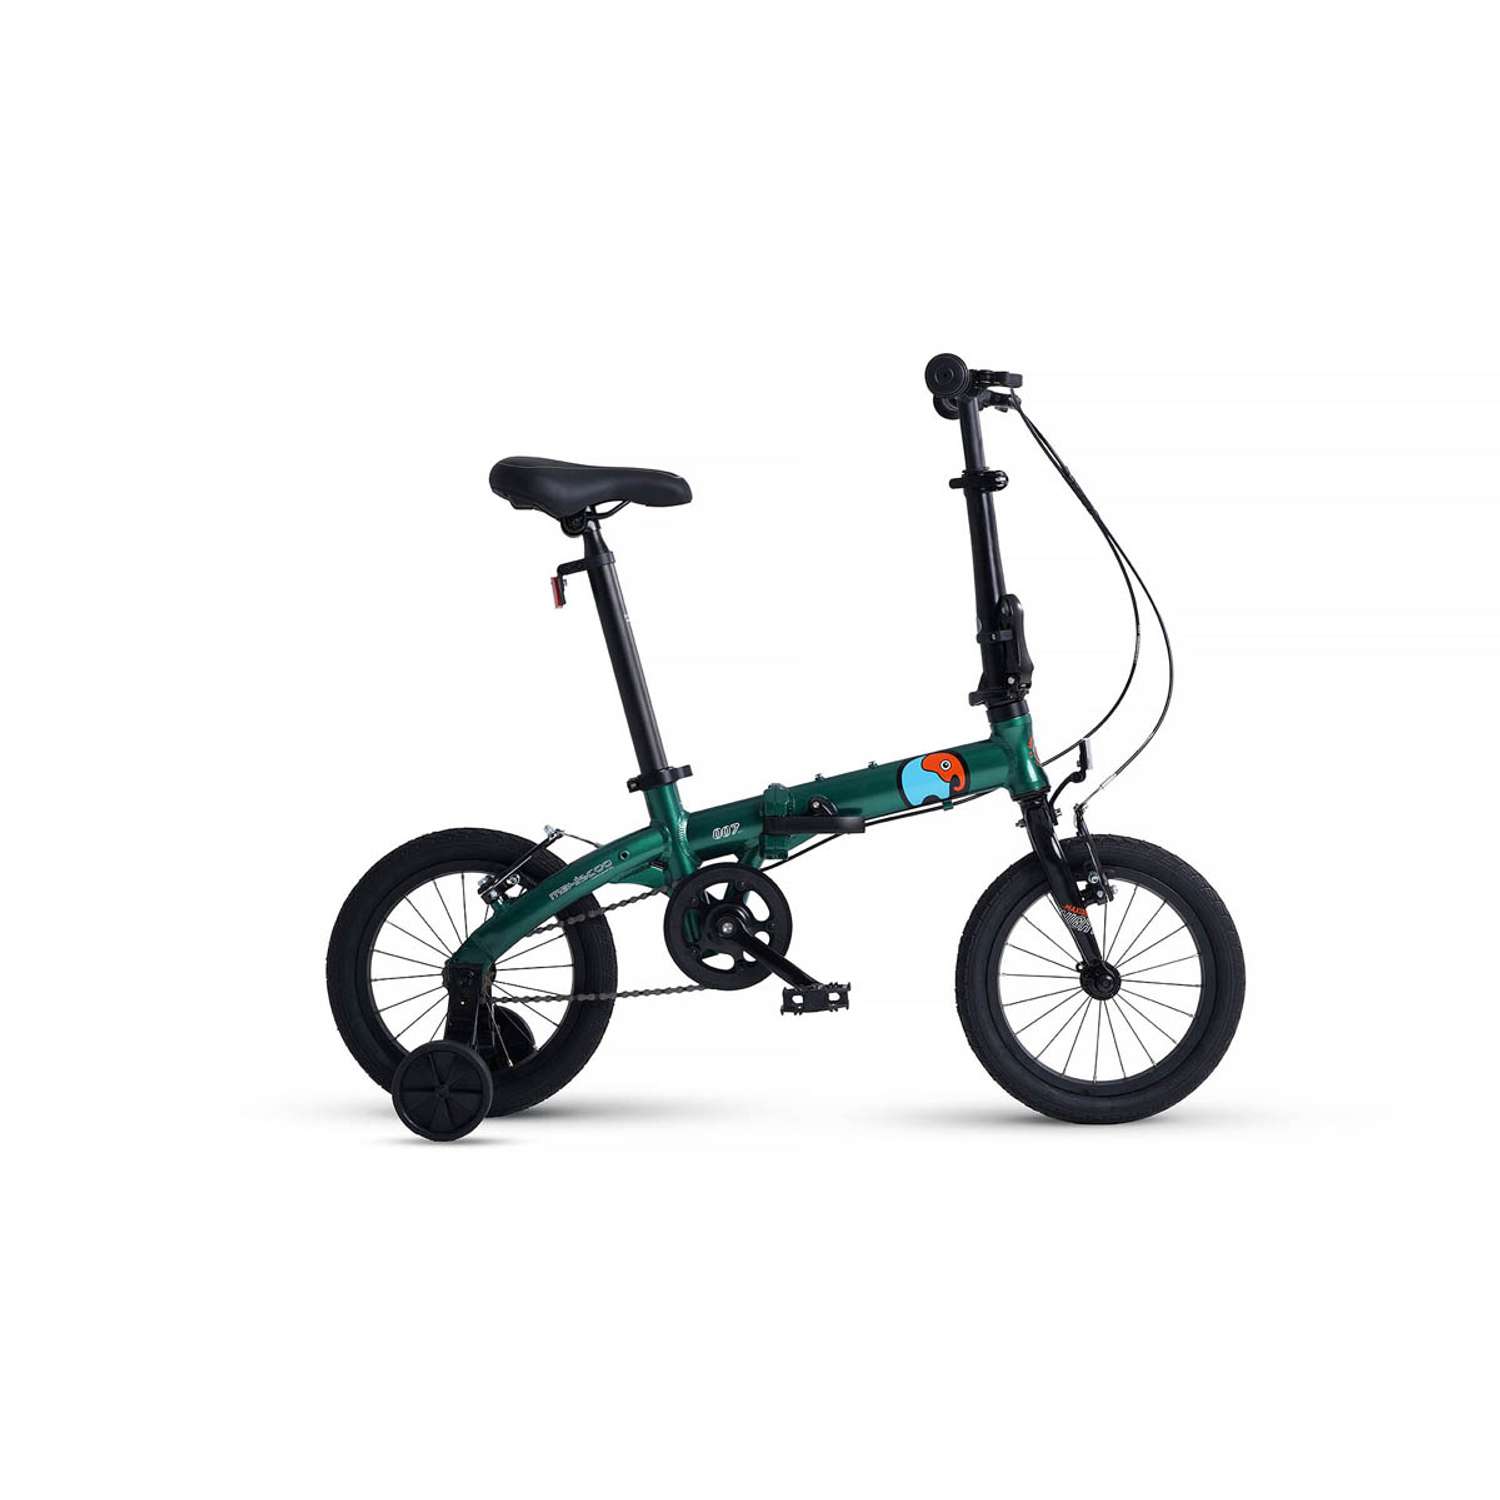 Велосипед Детский Складной Maxiscoo S007 стандарт 14 зеленый - фото 1